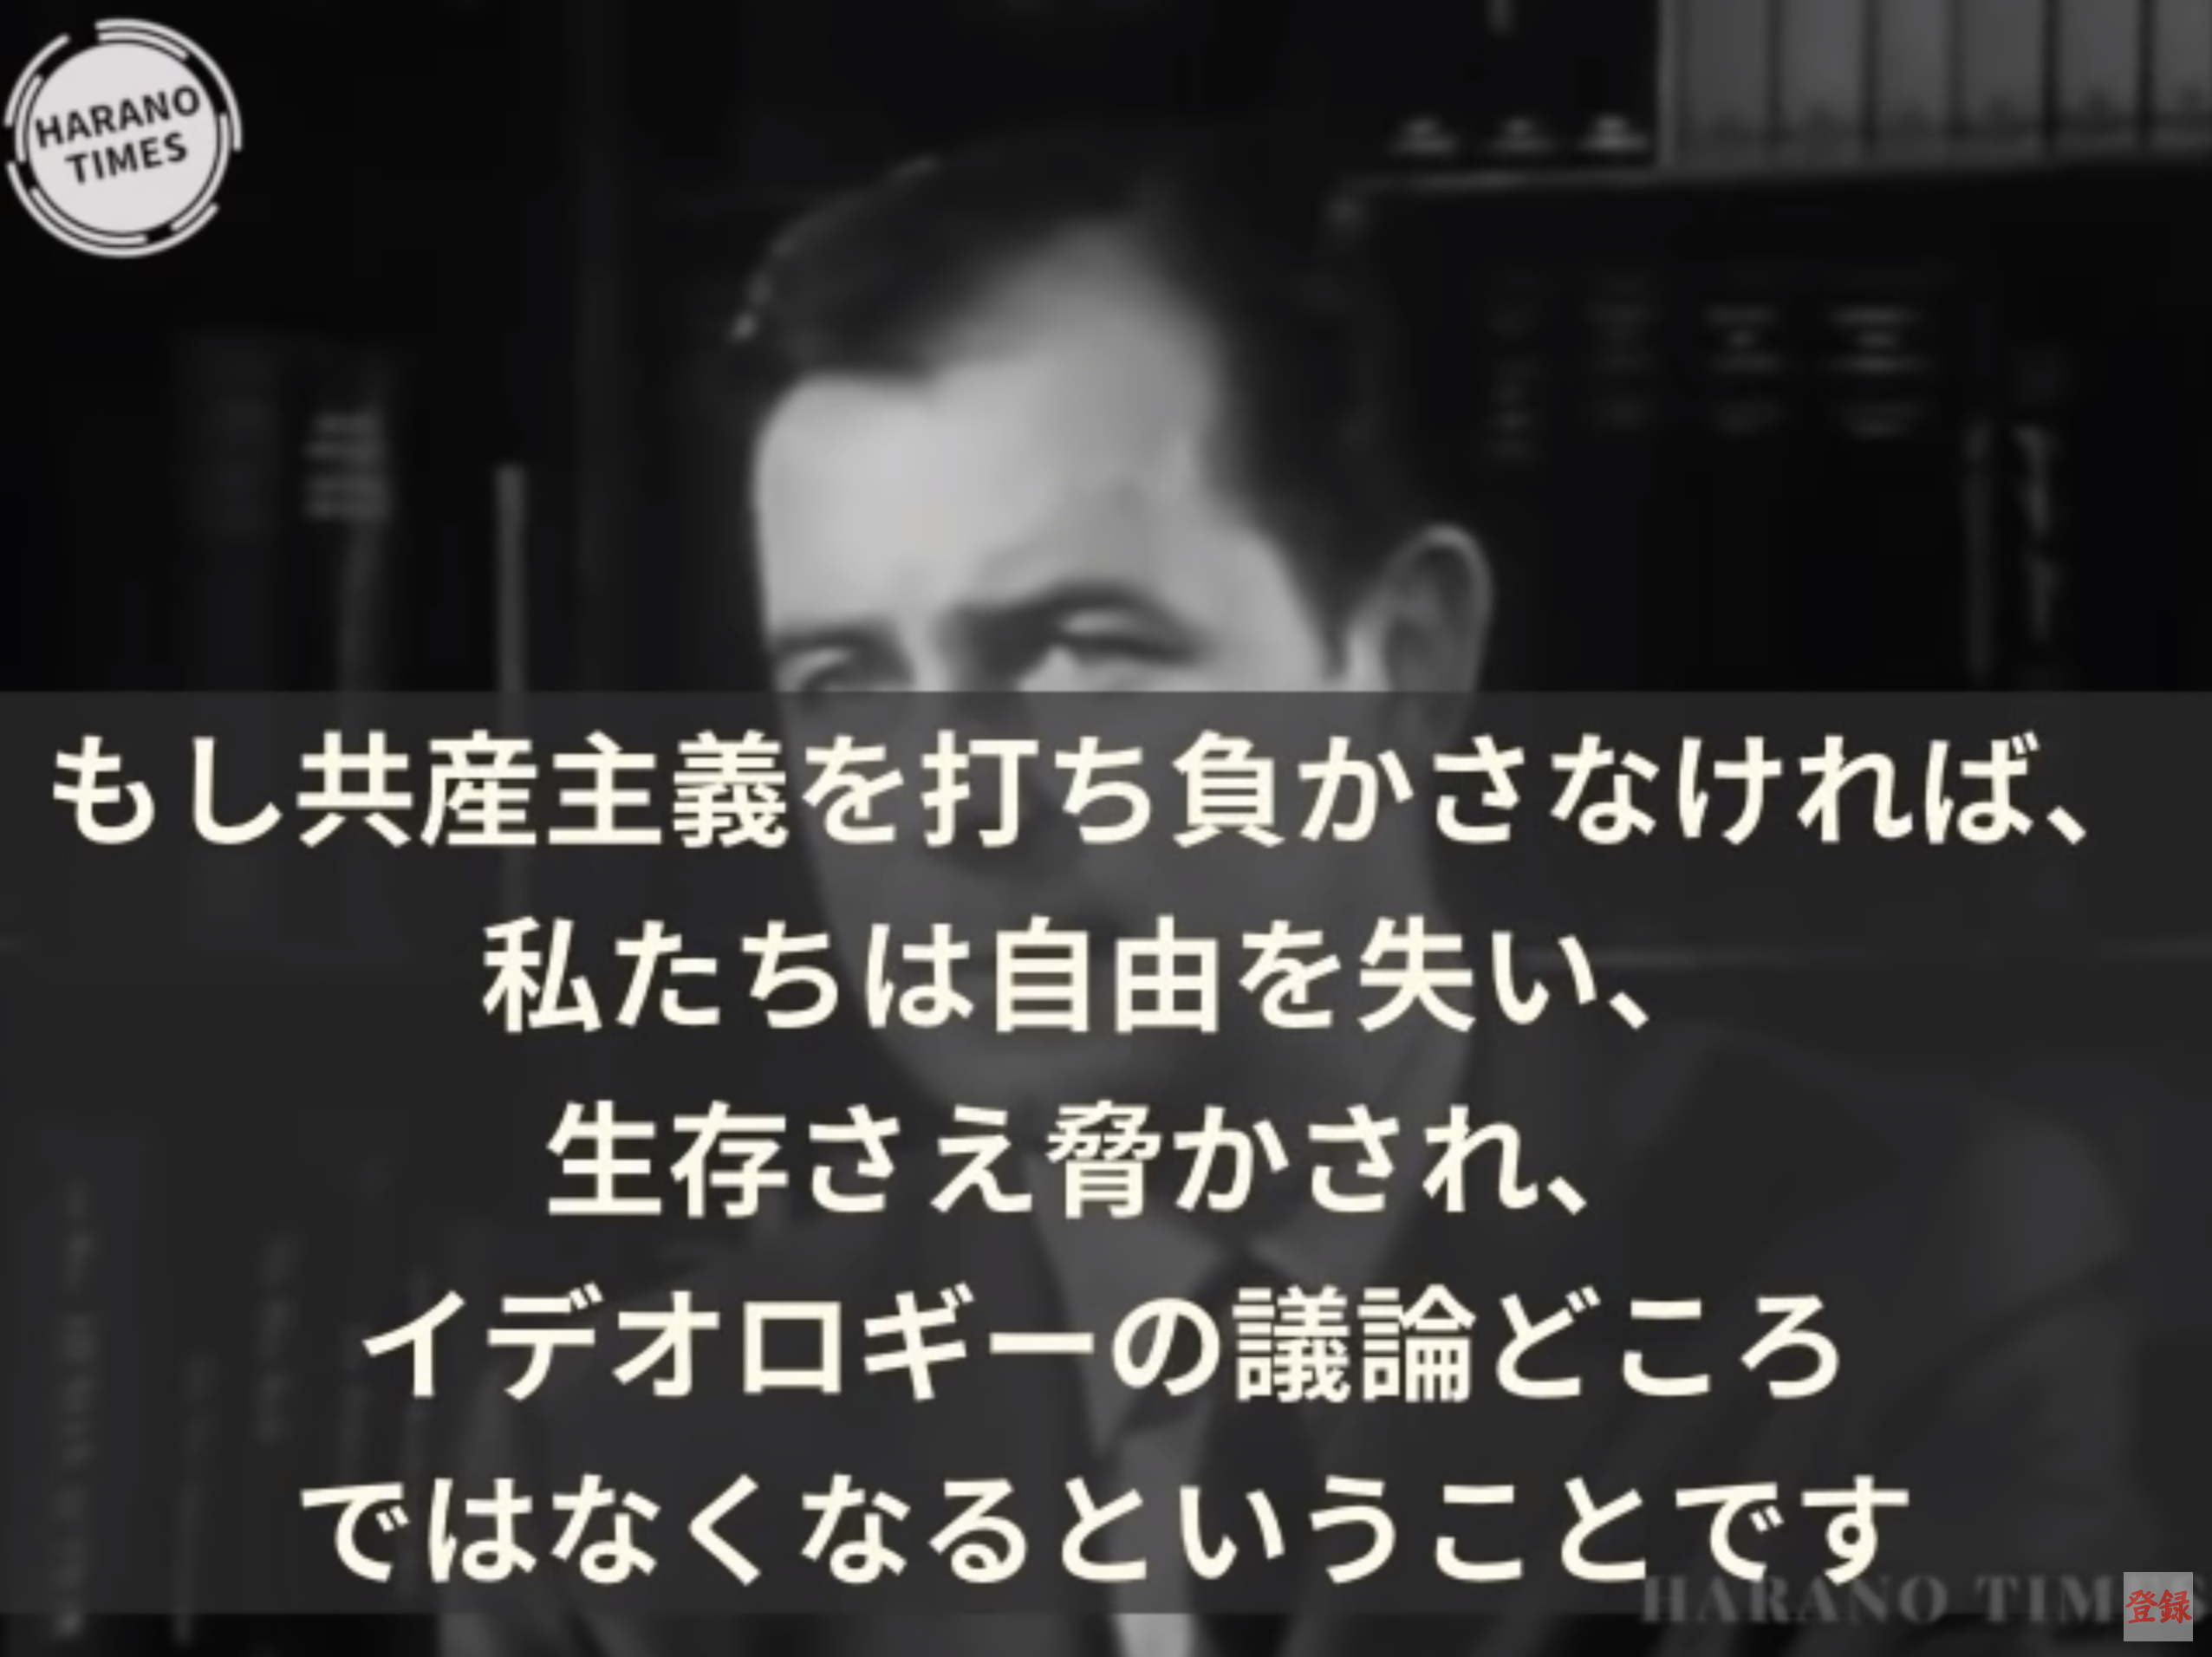 【必見動画】Harano Timesさん、共産主義の本質がわかる53年前の警告